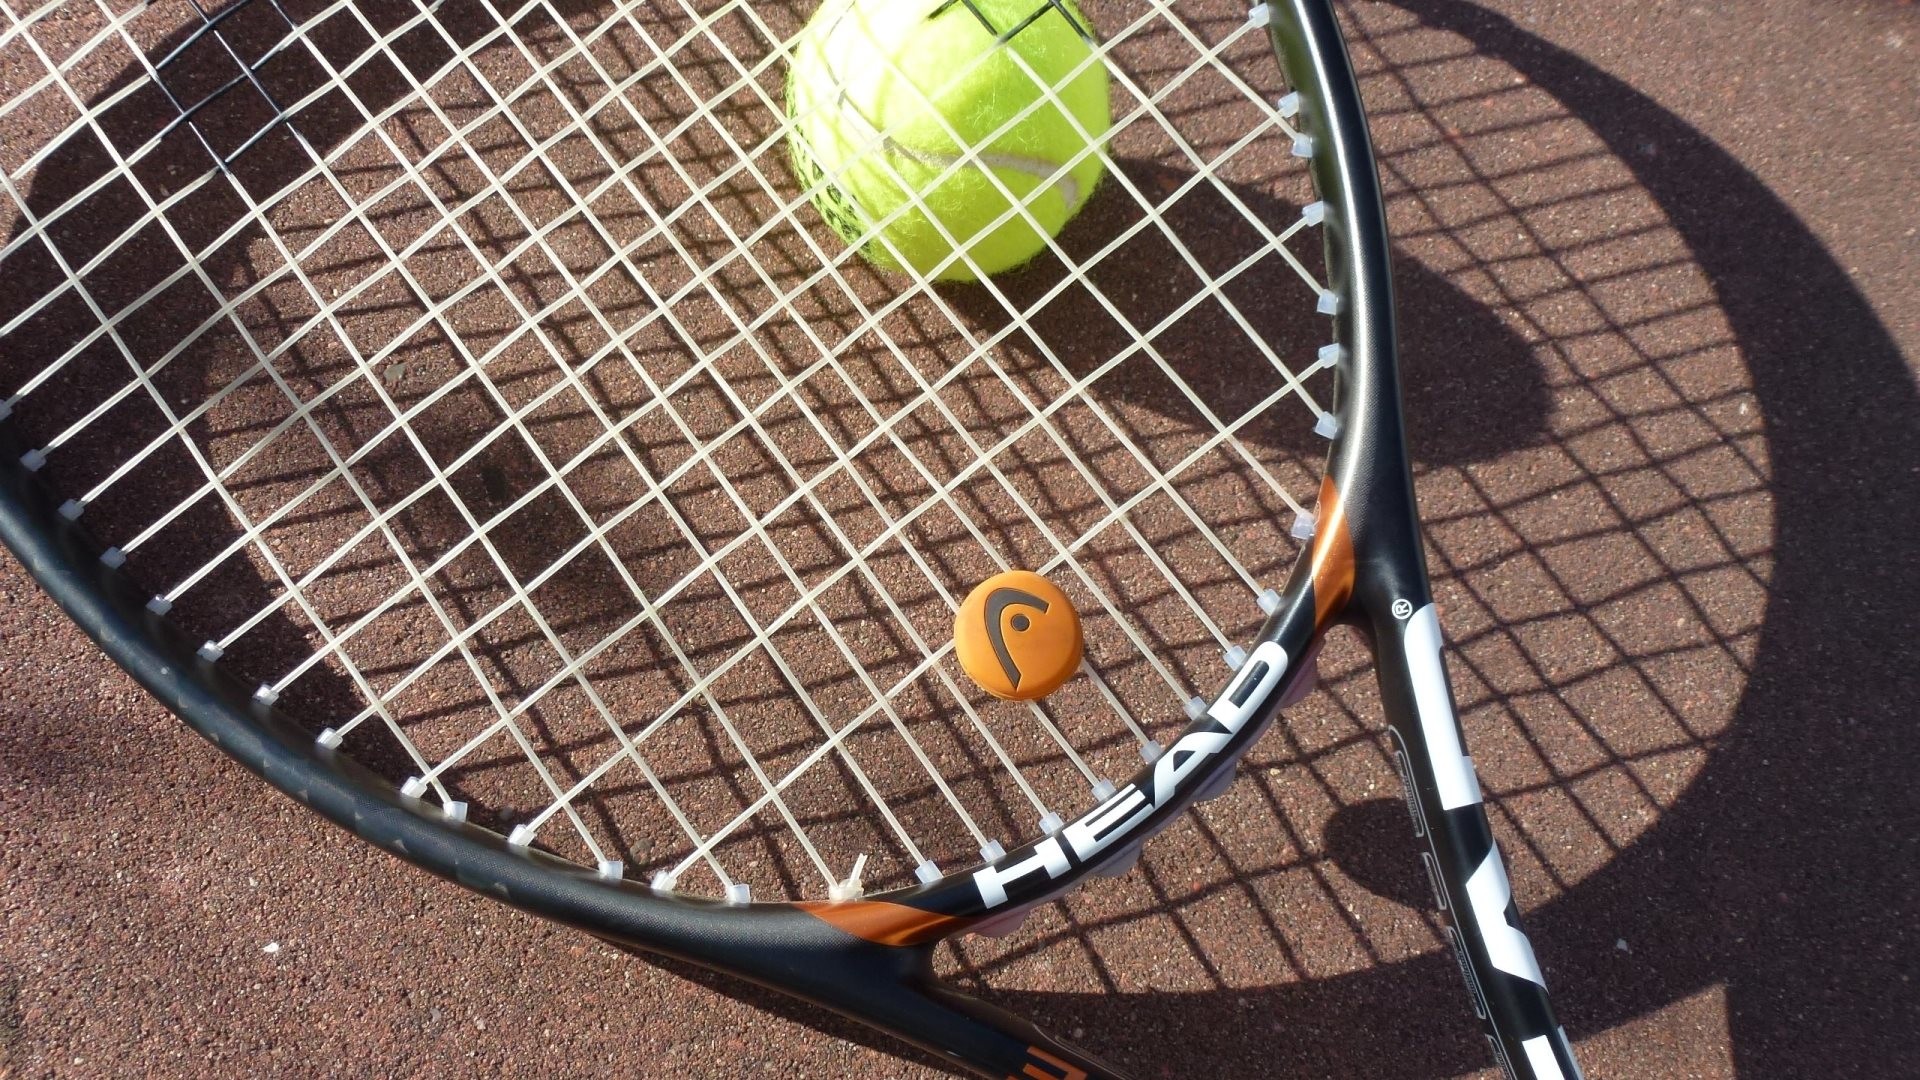 1920x1080 HD Wallpaper 3: Tennis Racket and Tennis Ball